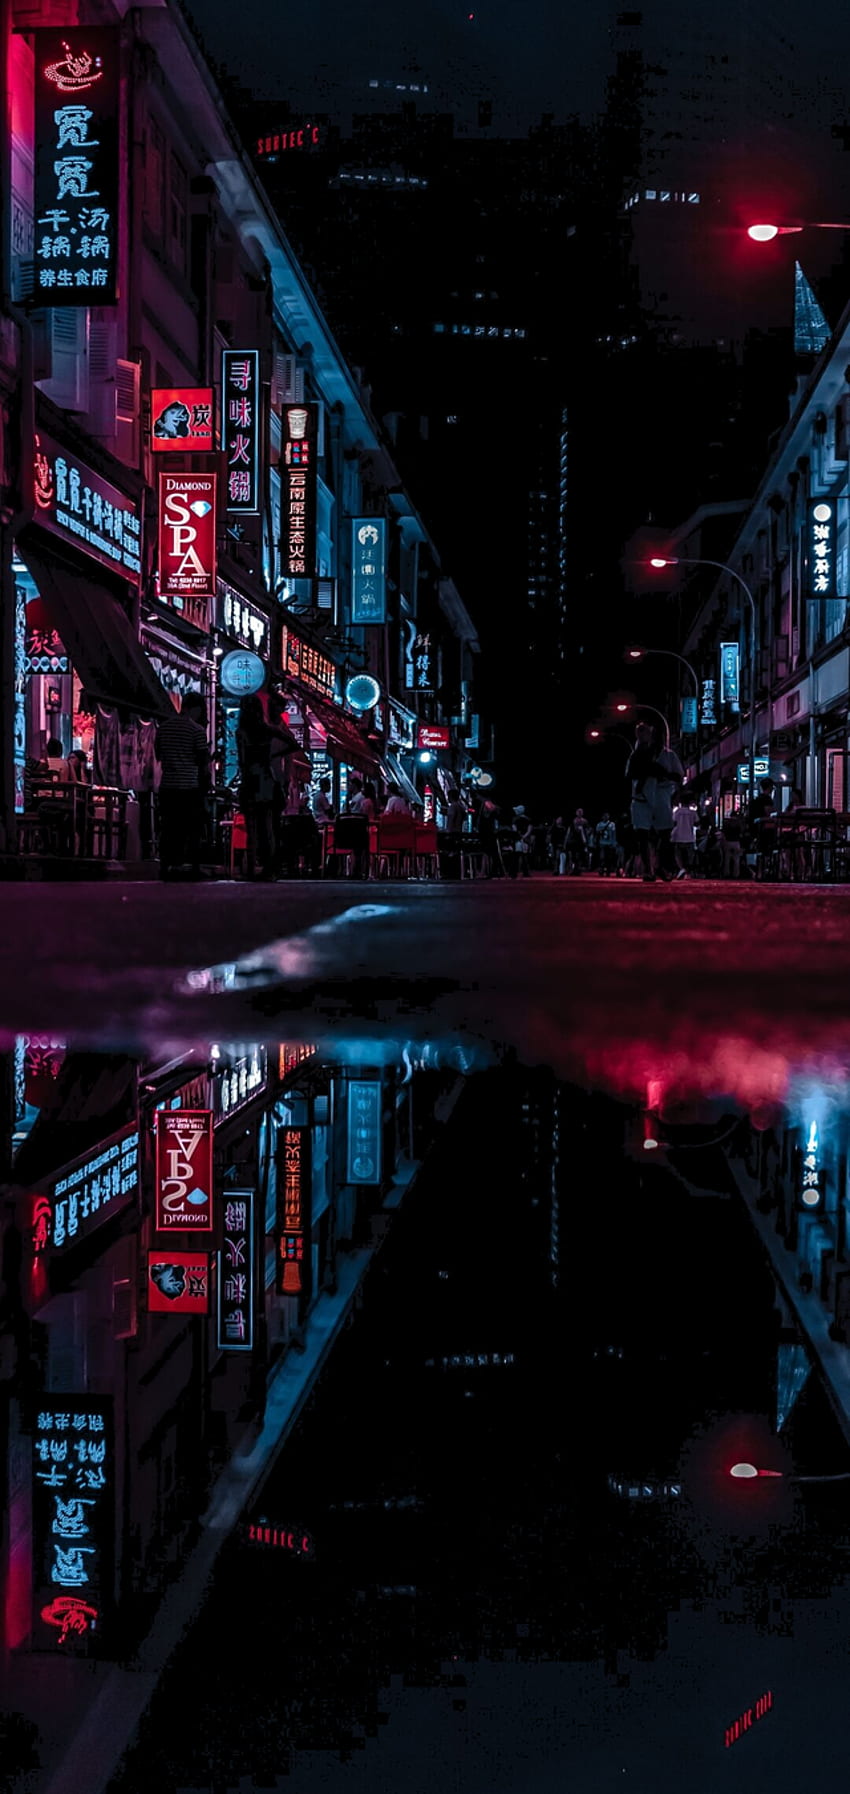 Hãy chiêm ngưỡng đèn neon đô thị phản chiếu sáng lấp lánh, tạo nên bức tranh lung linh đẹp mắt và đầy sức sống. Hình ảnh sẽ đưa bạn đến với những con phố đêm ồn ào, sáng tạo và đầy màu sắc của thành phố đông đúc.